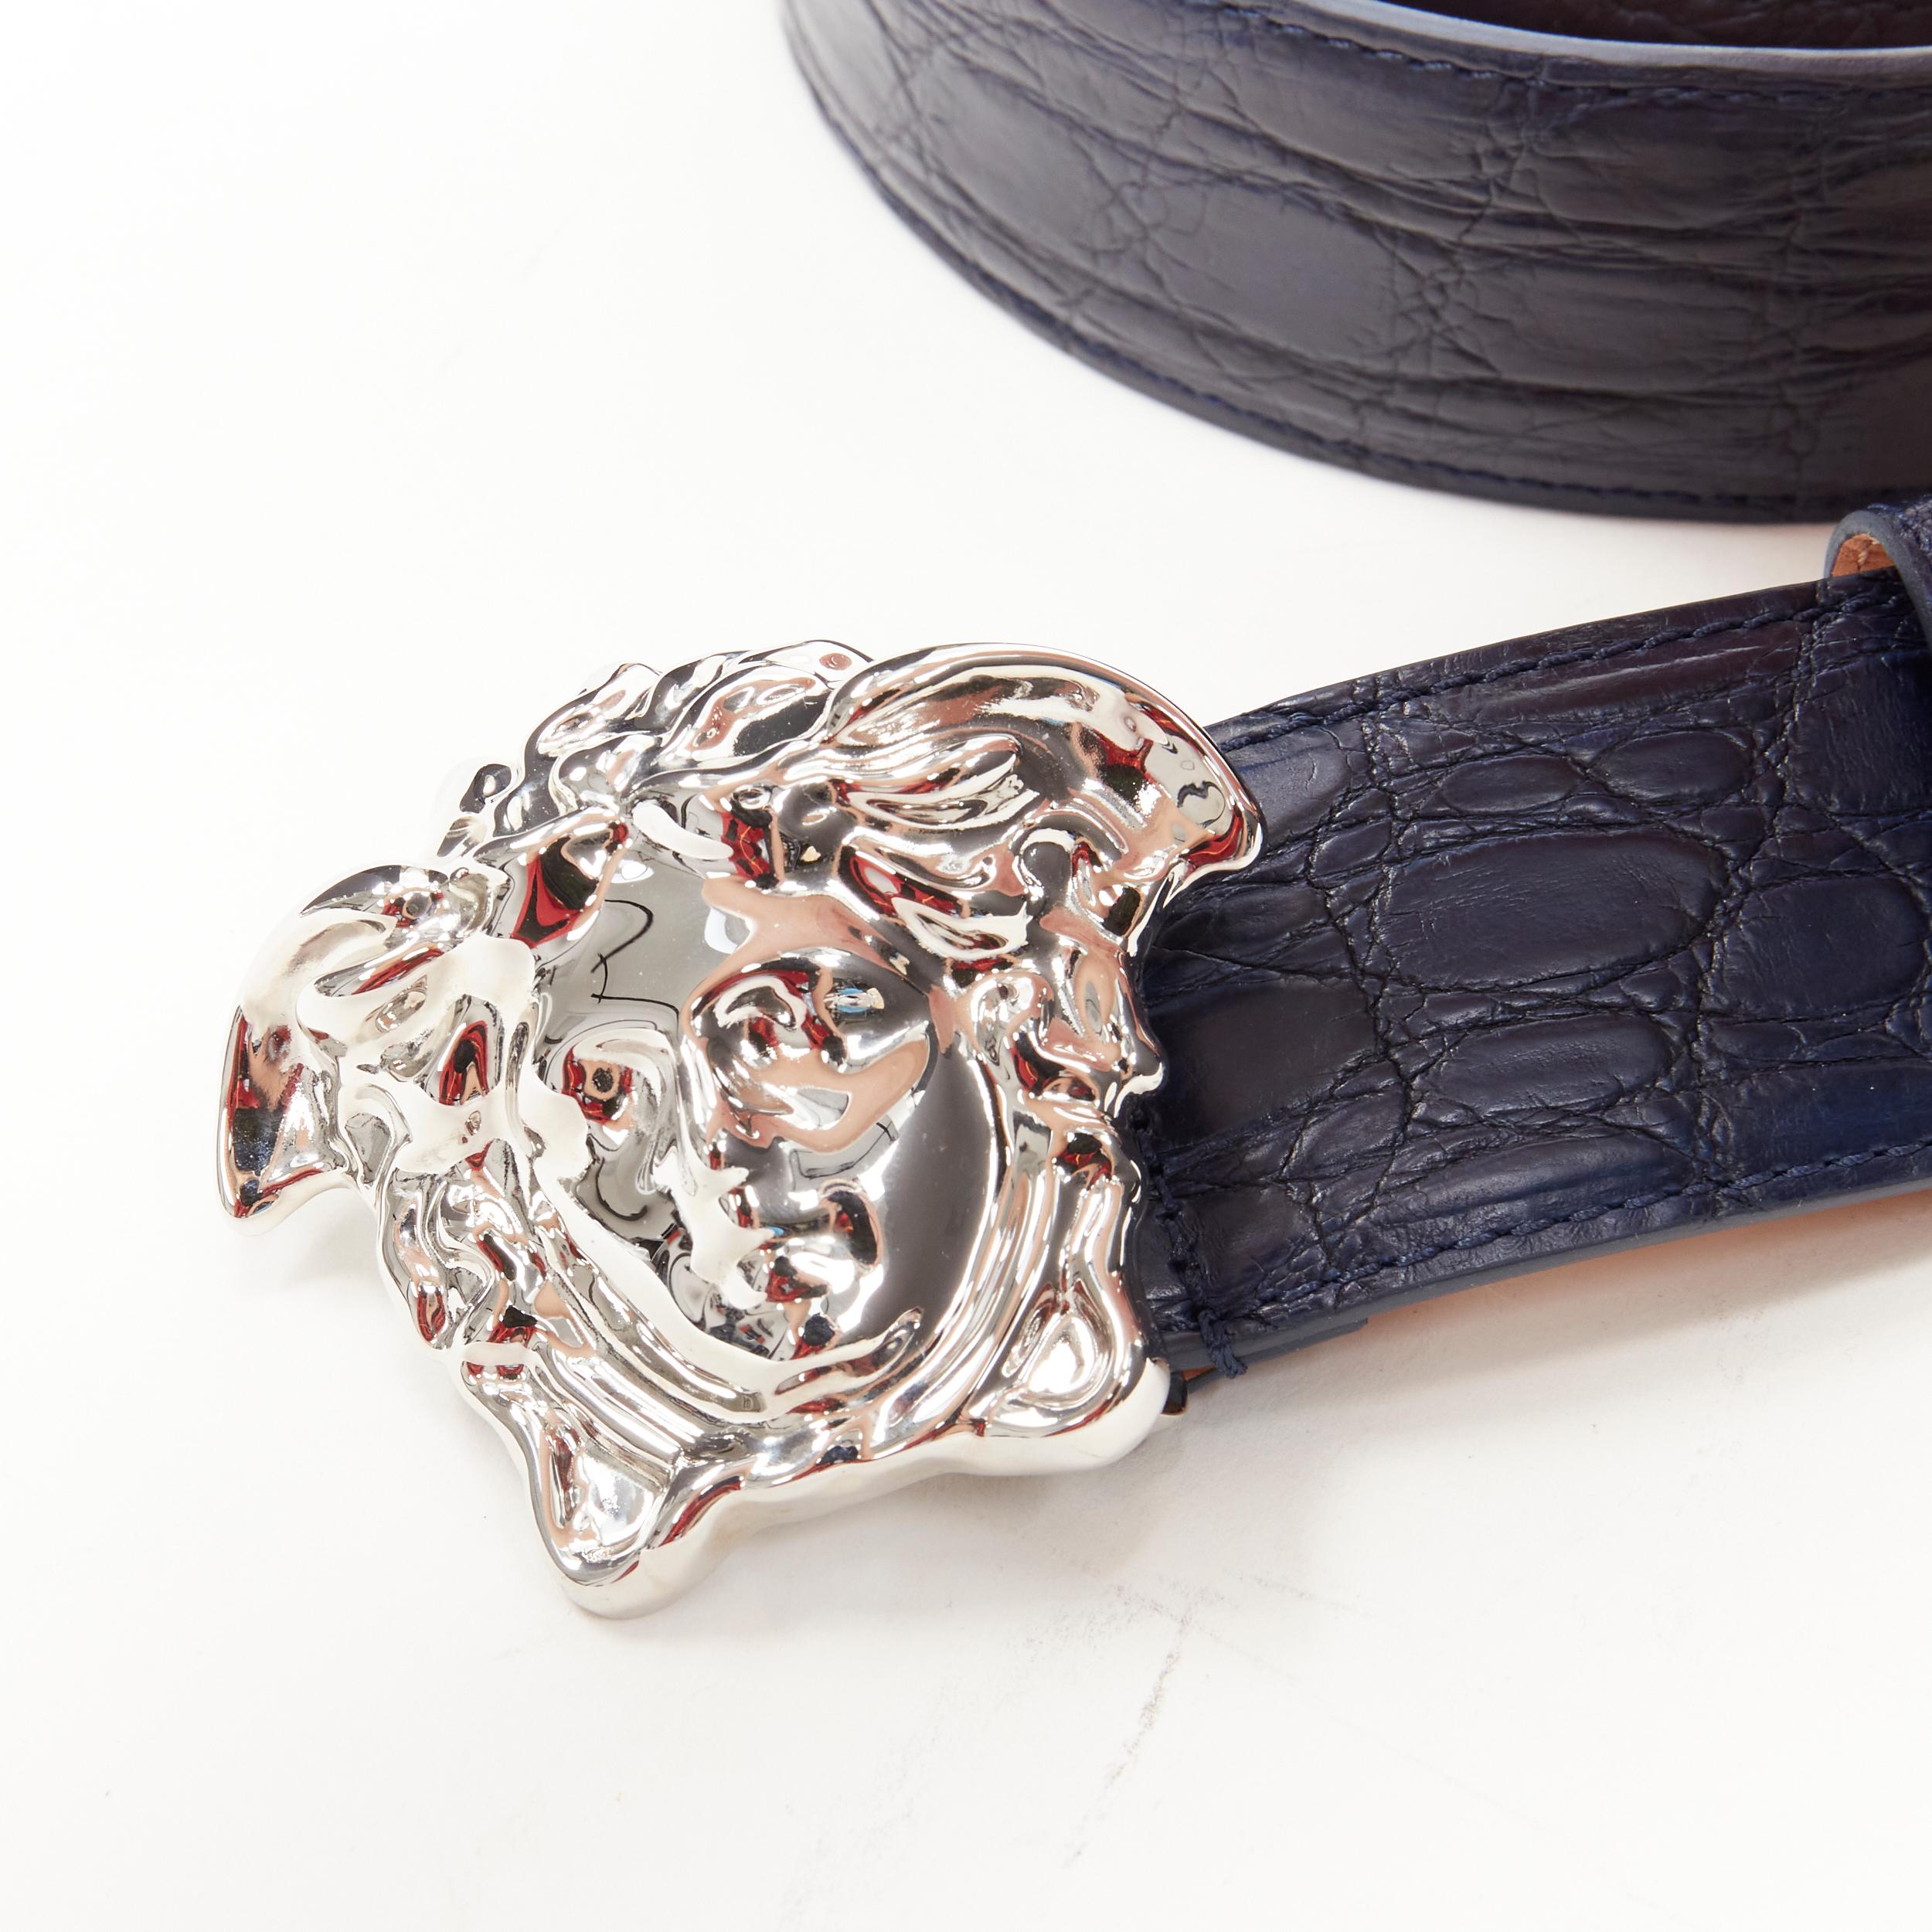 new VERSACE $1200 La Medusa silver buckle navy blue croc leather belt 110cm 44